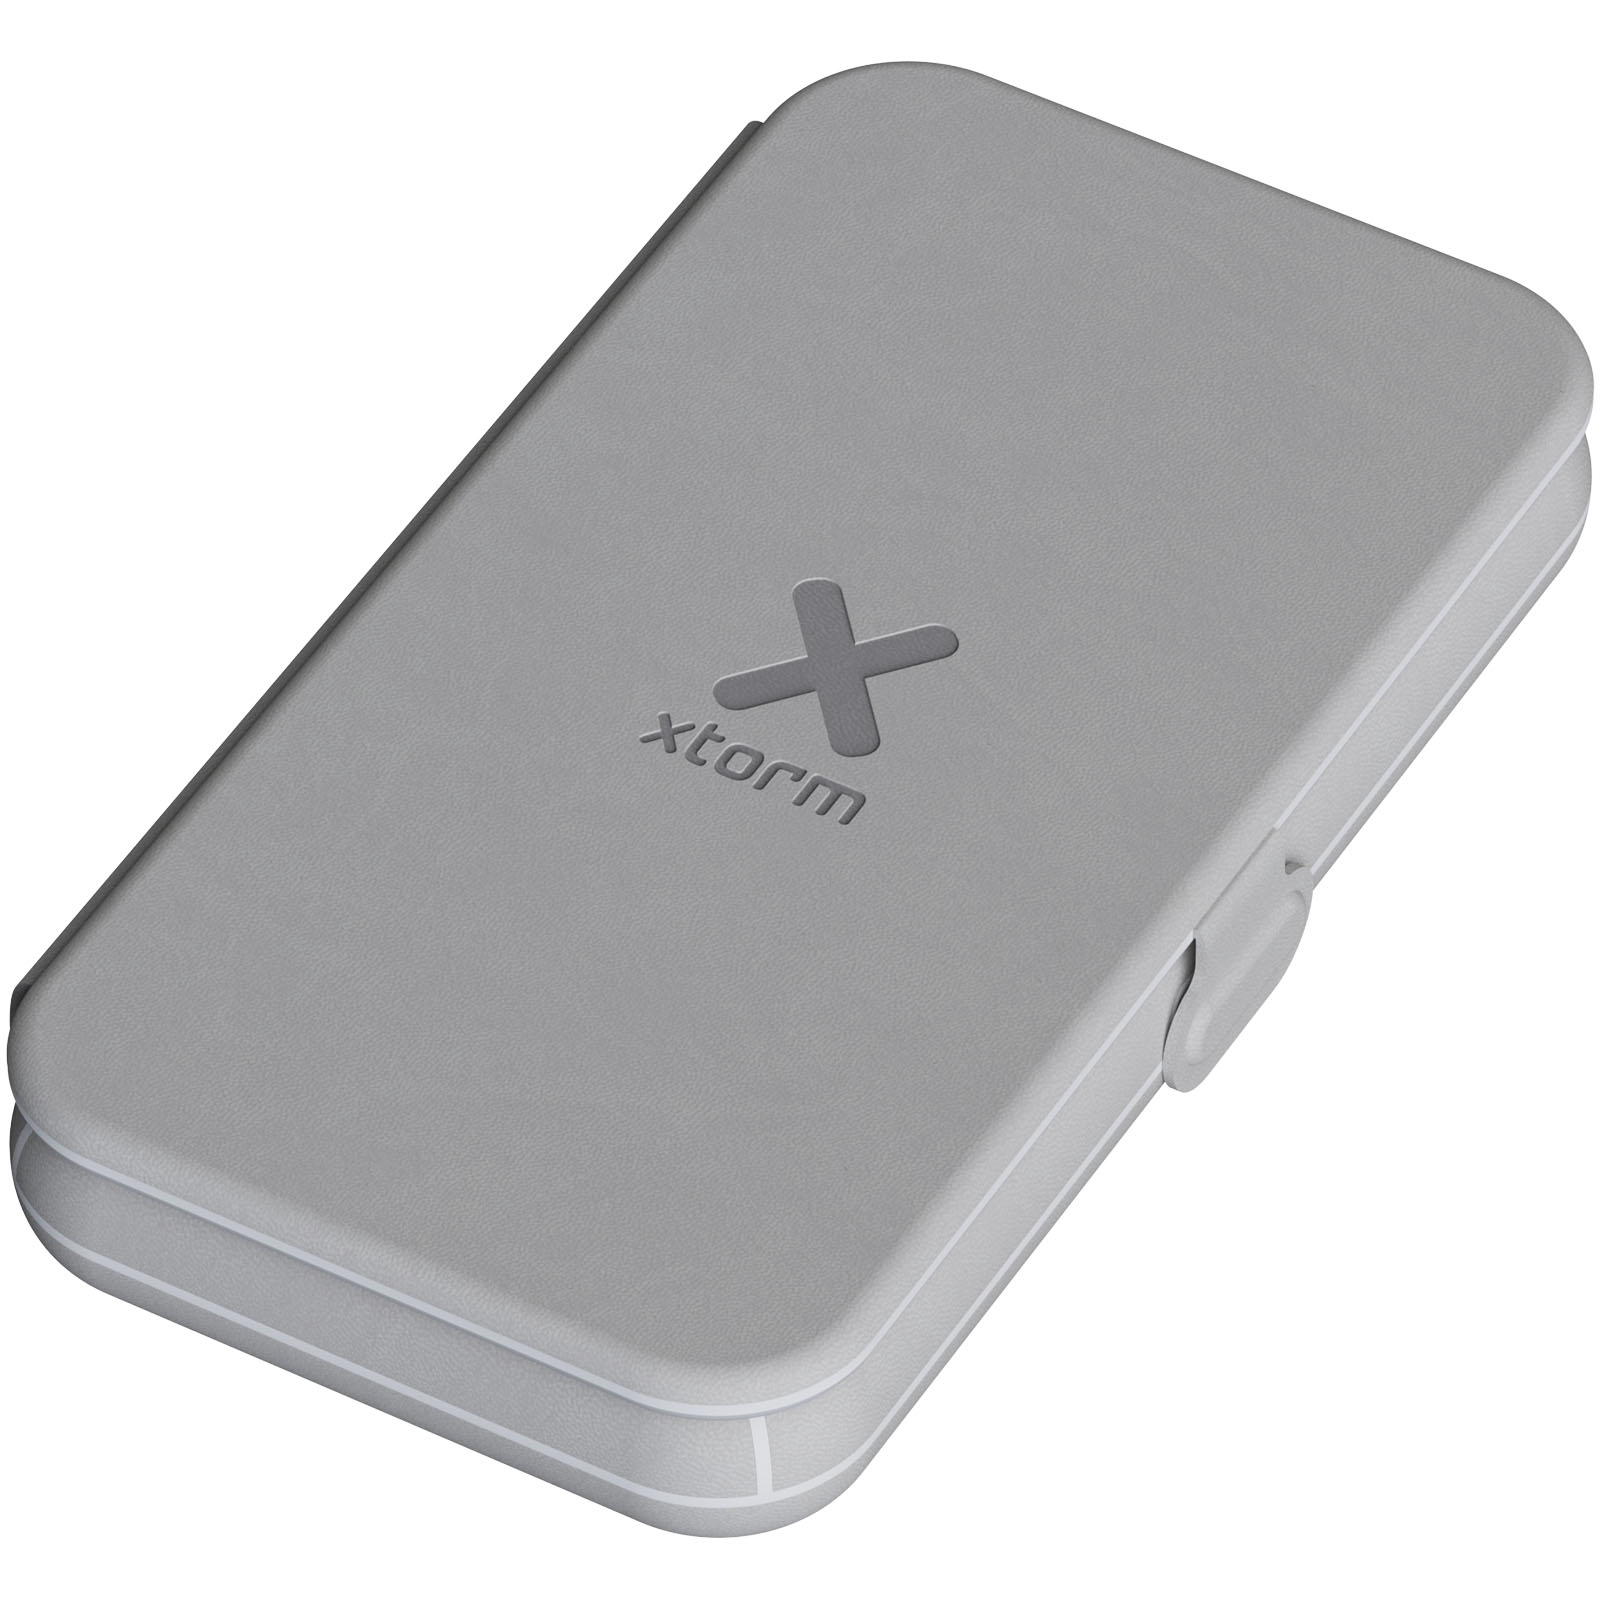 Chargeurs sans fil - Chargeur de voyage Xtorm XWF31 sans fil 3-en-1 pliable de 15 W